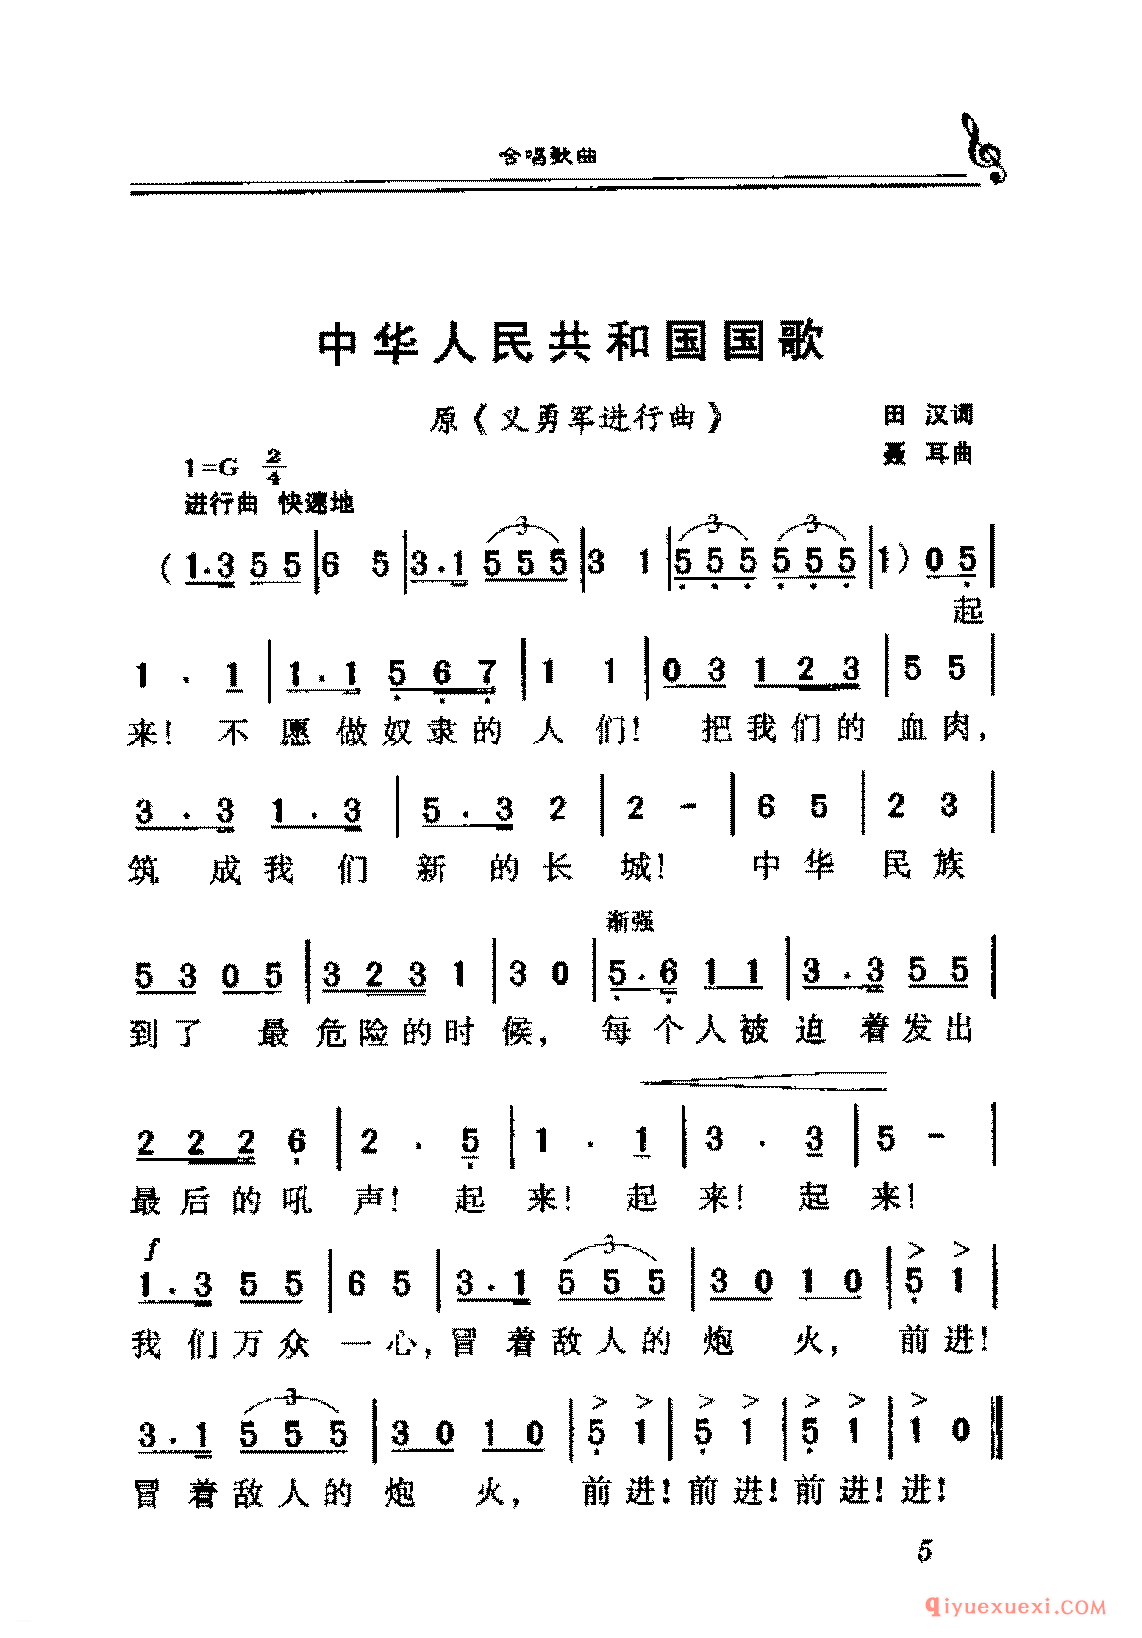 中华人民共和国国歌 | 爱国合唱歌曲谱